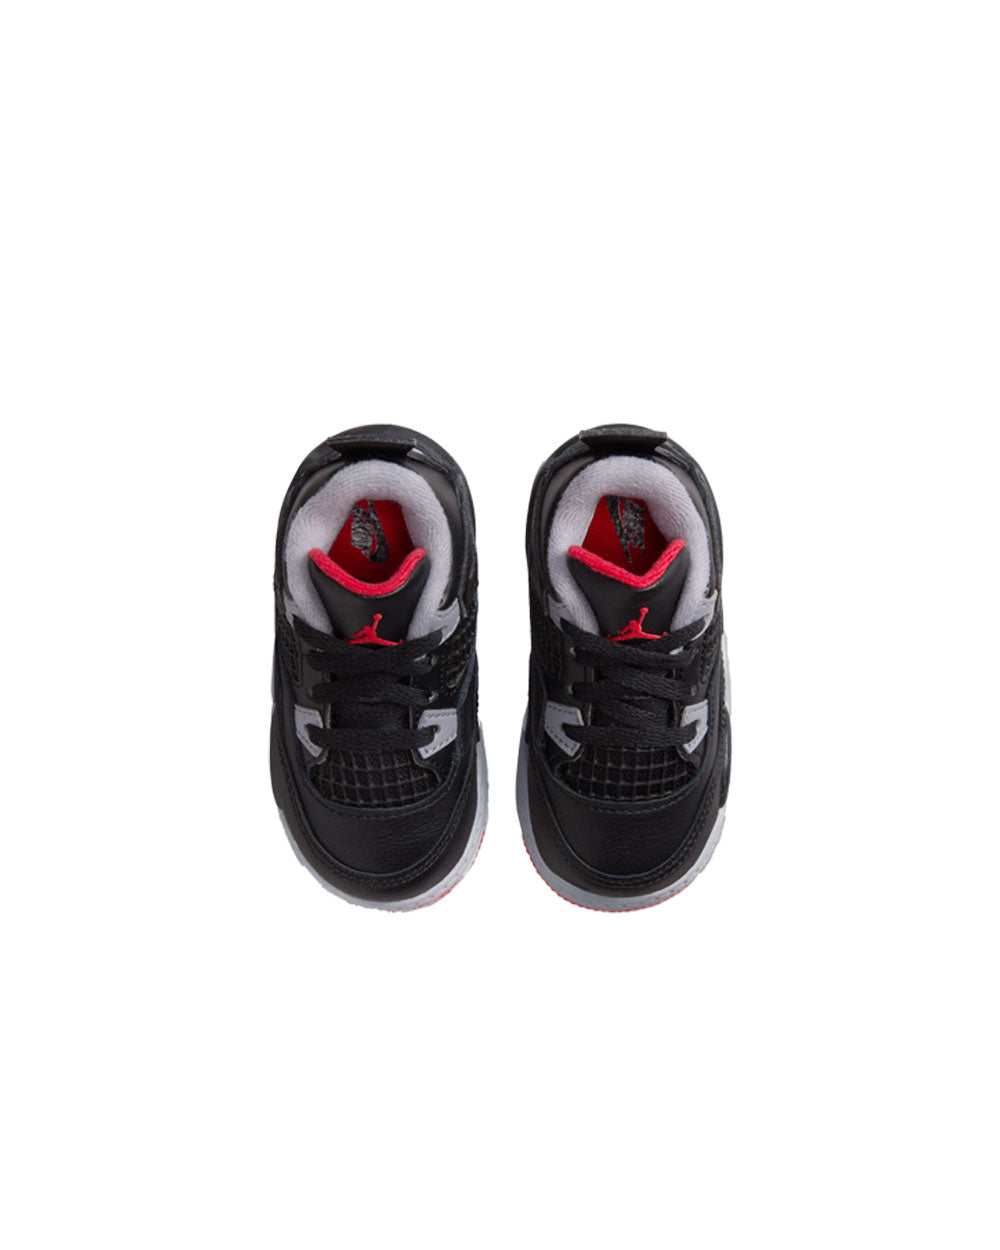 Air Jordan 4 Retro Black/Fire Red/Cement Td BQ7670-006